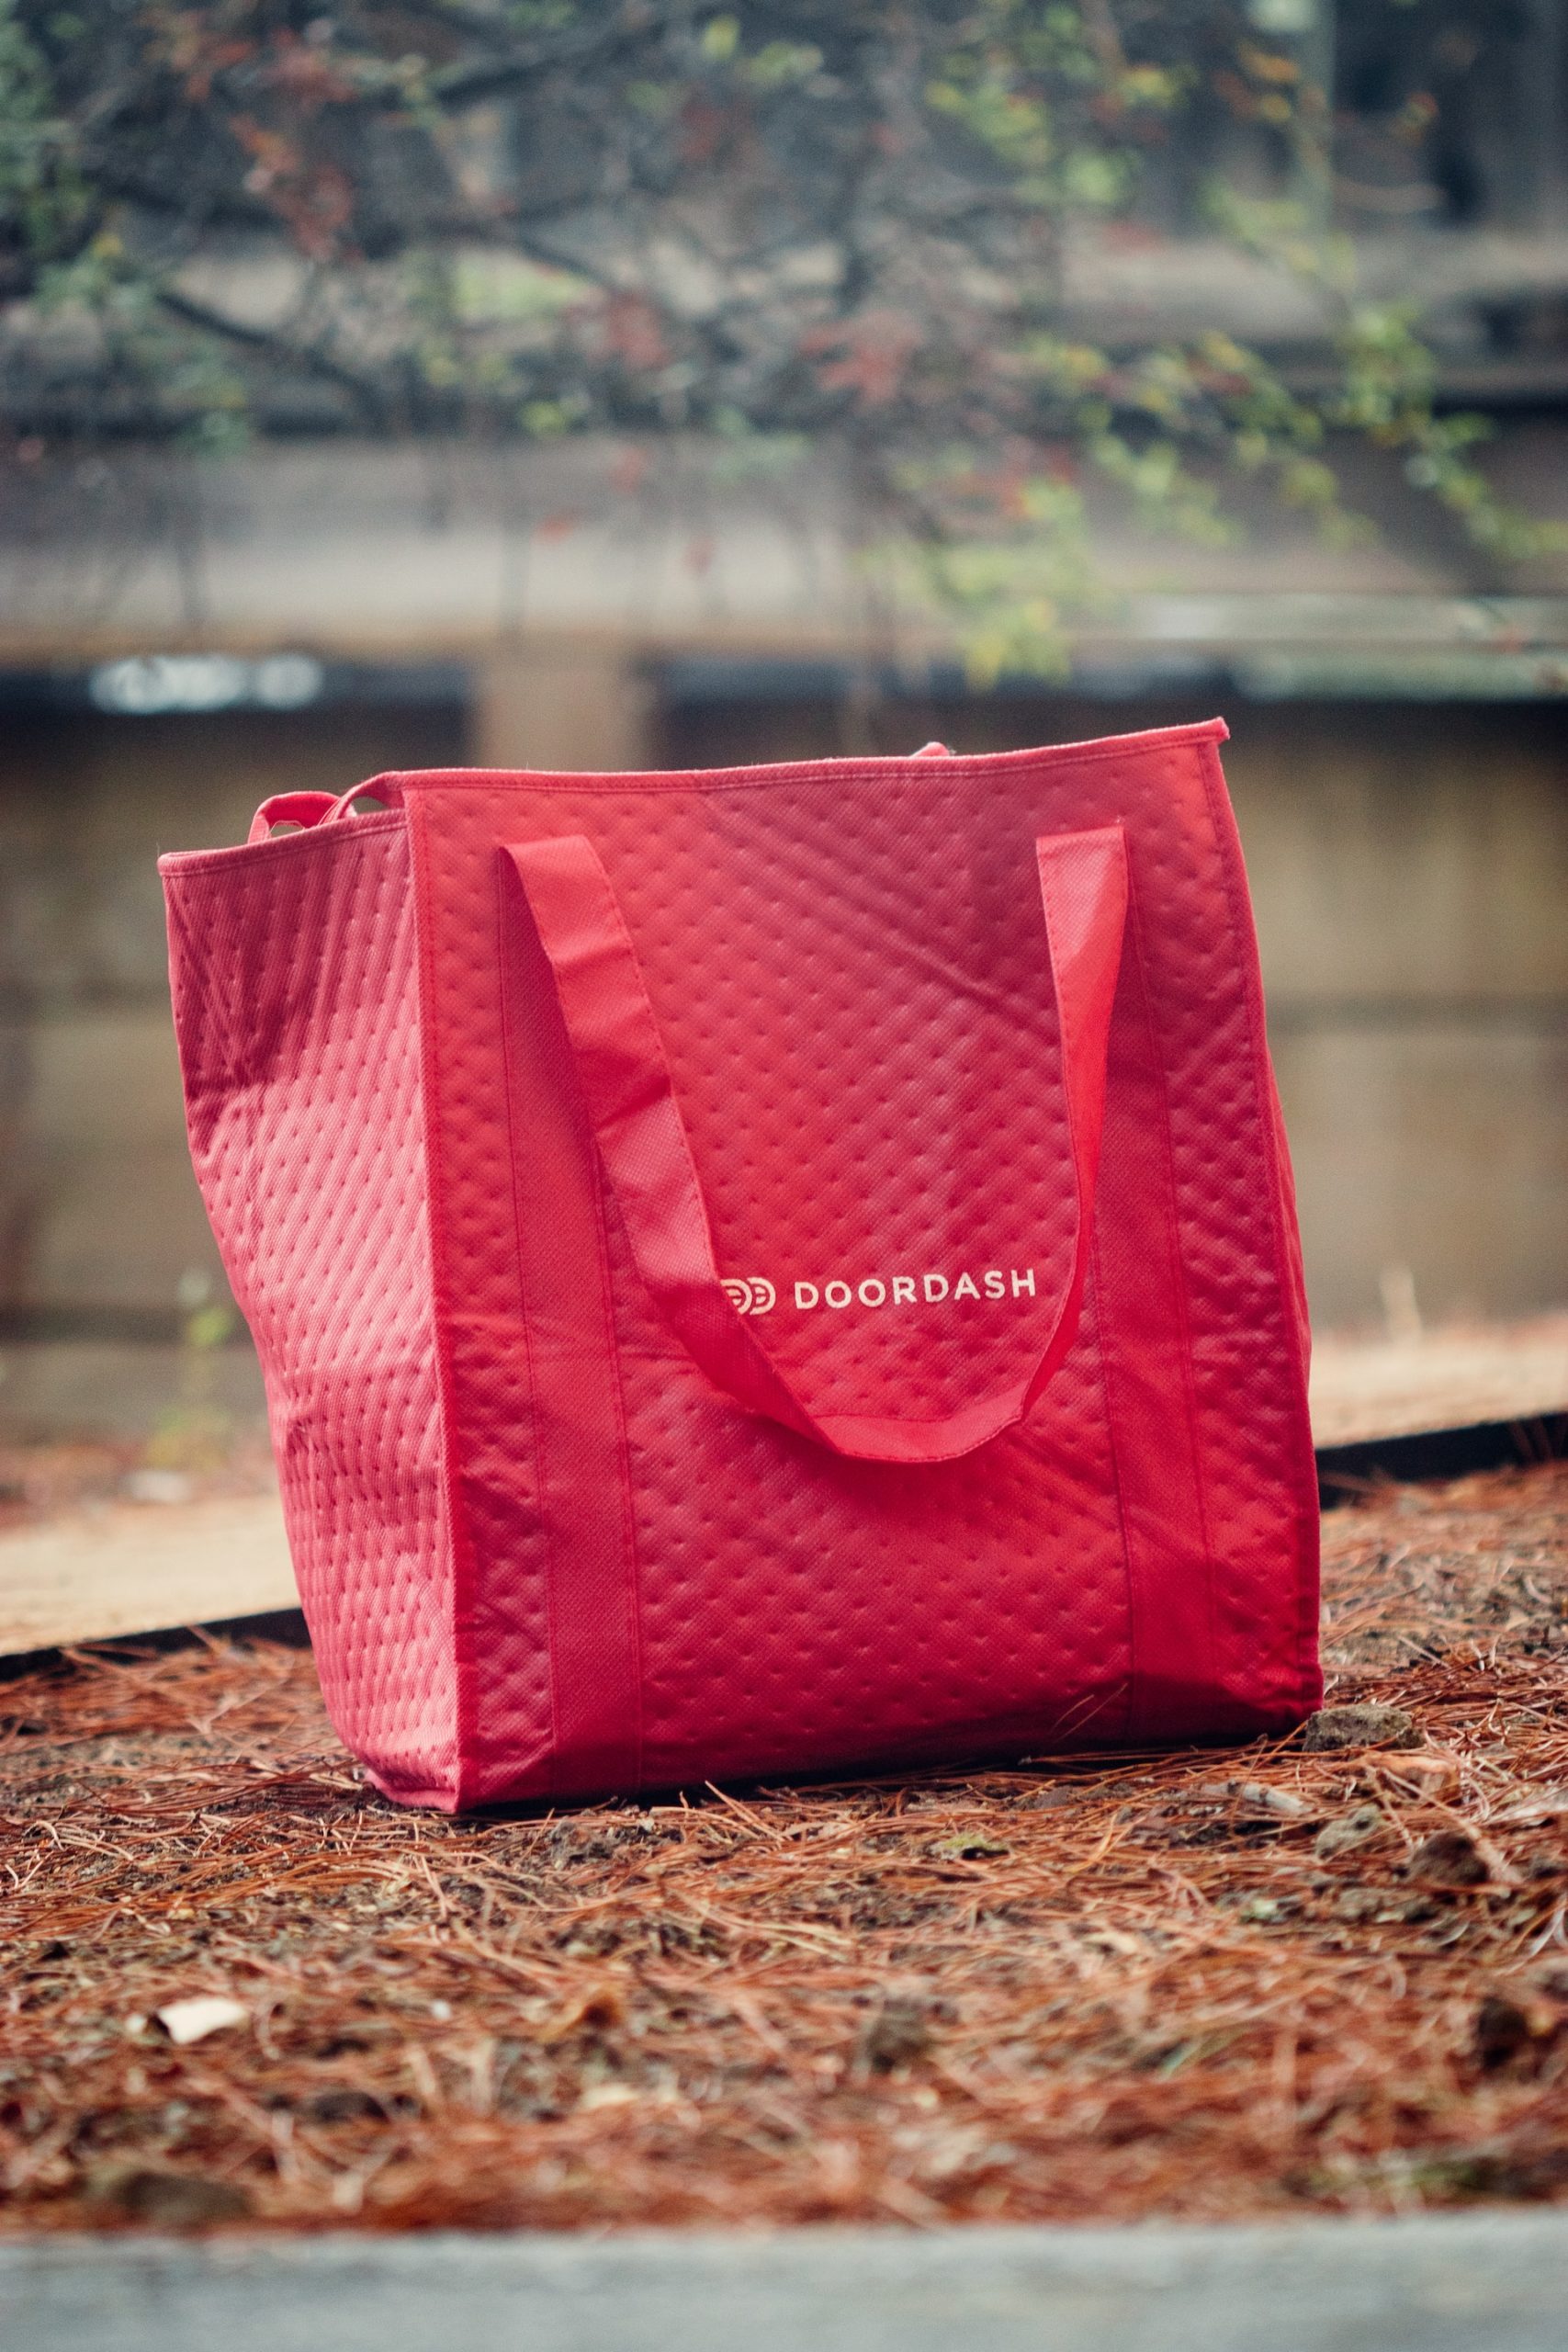 DoorDash delivery bag by Griffin Wooldridge on Unsplash